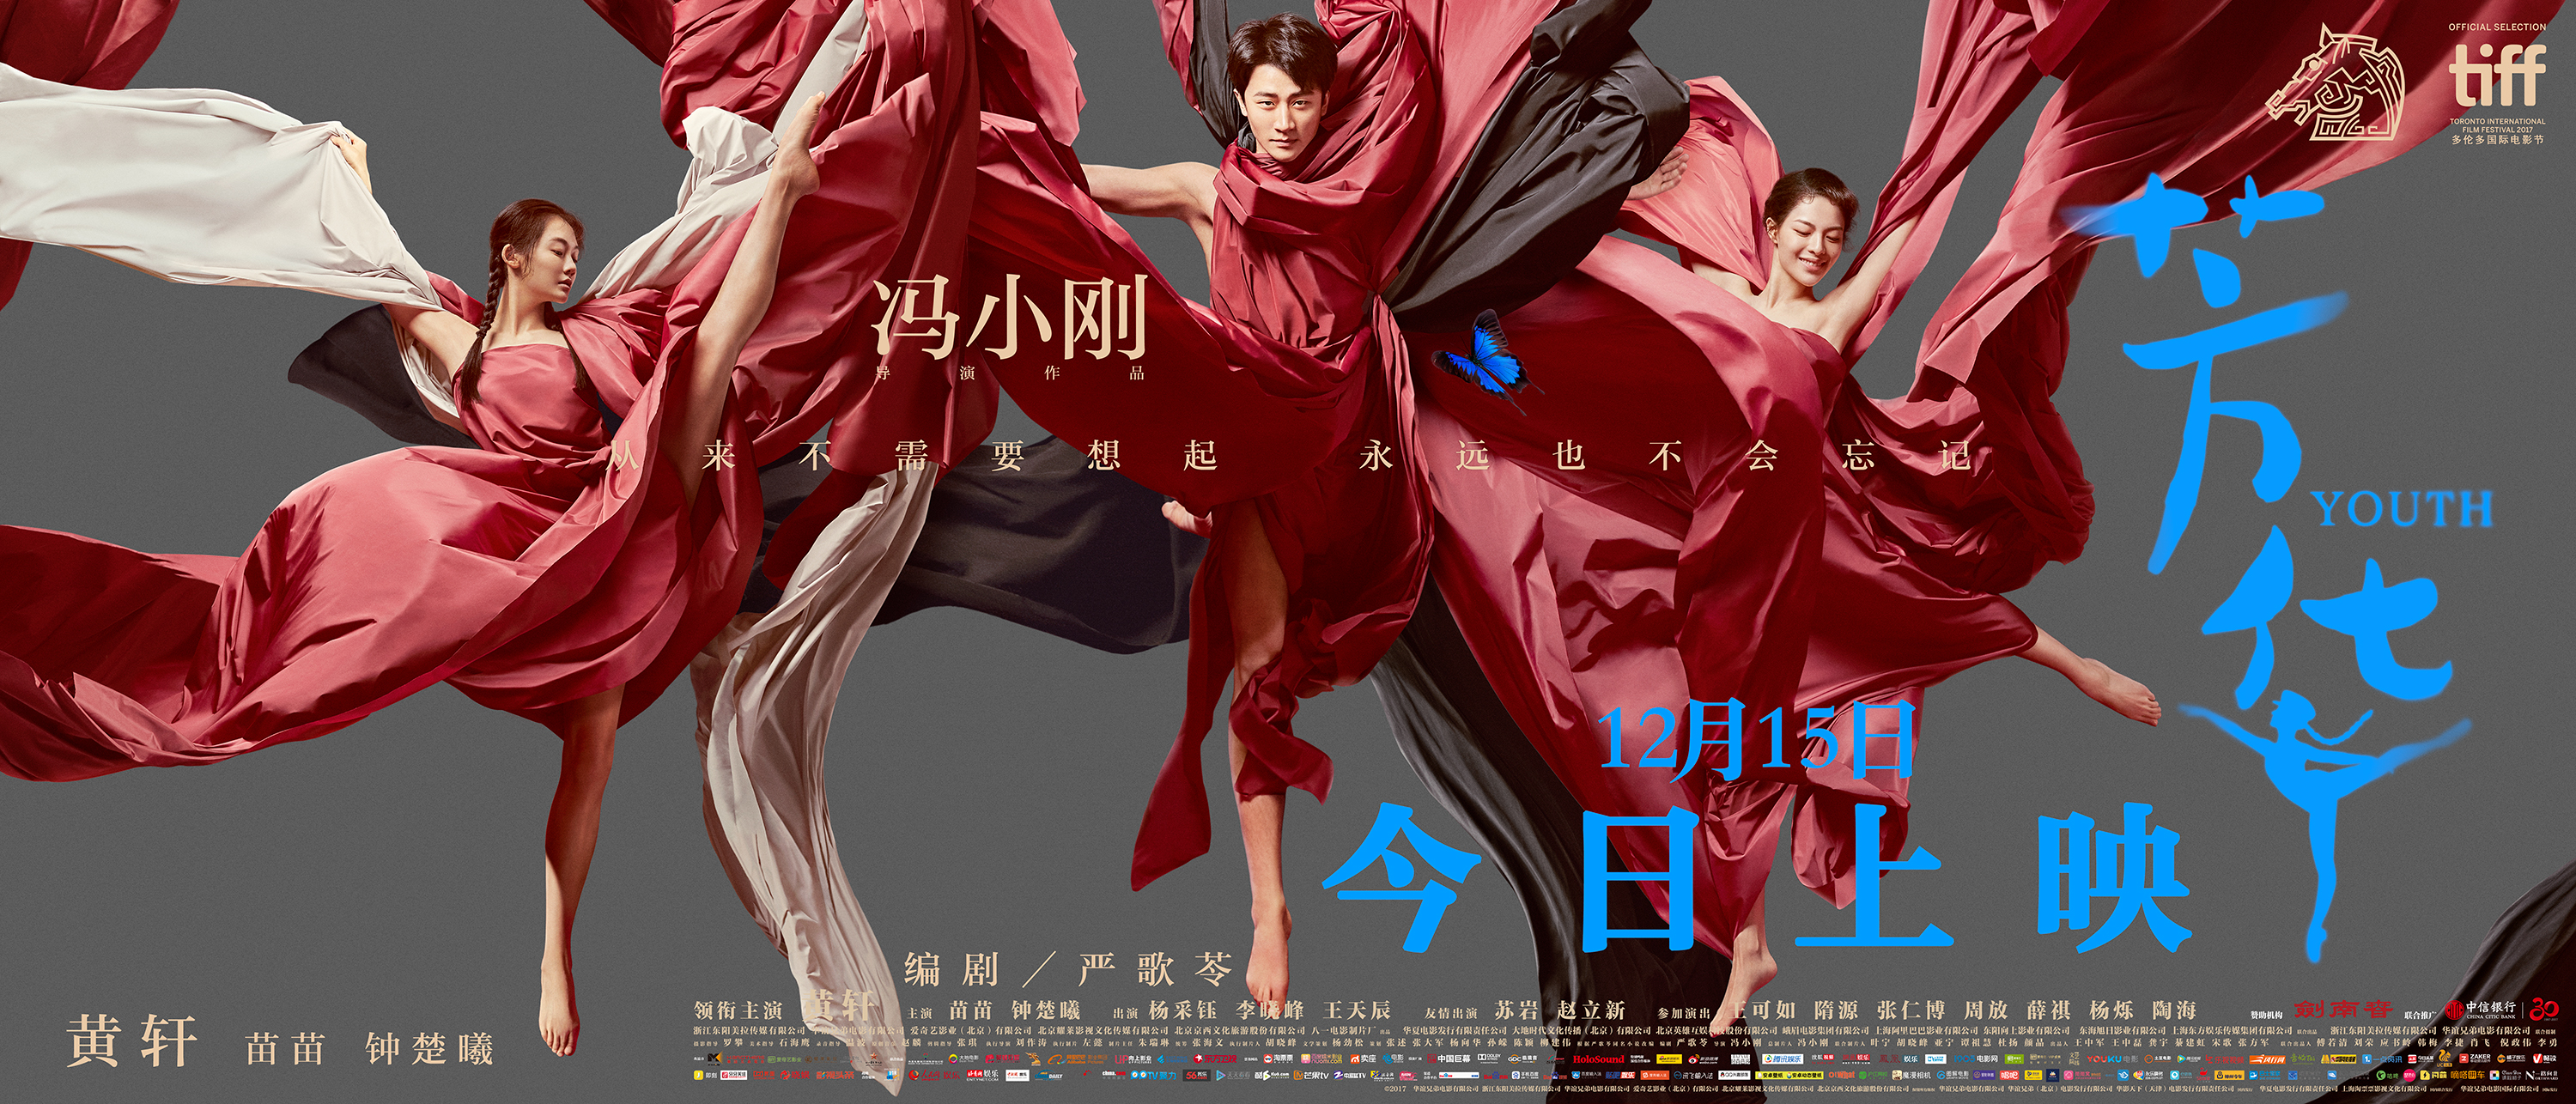 《芳华》三人旗帜版海报搜狐娱乐讯 由冯小刚执导,严歌苓编剧的电影